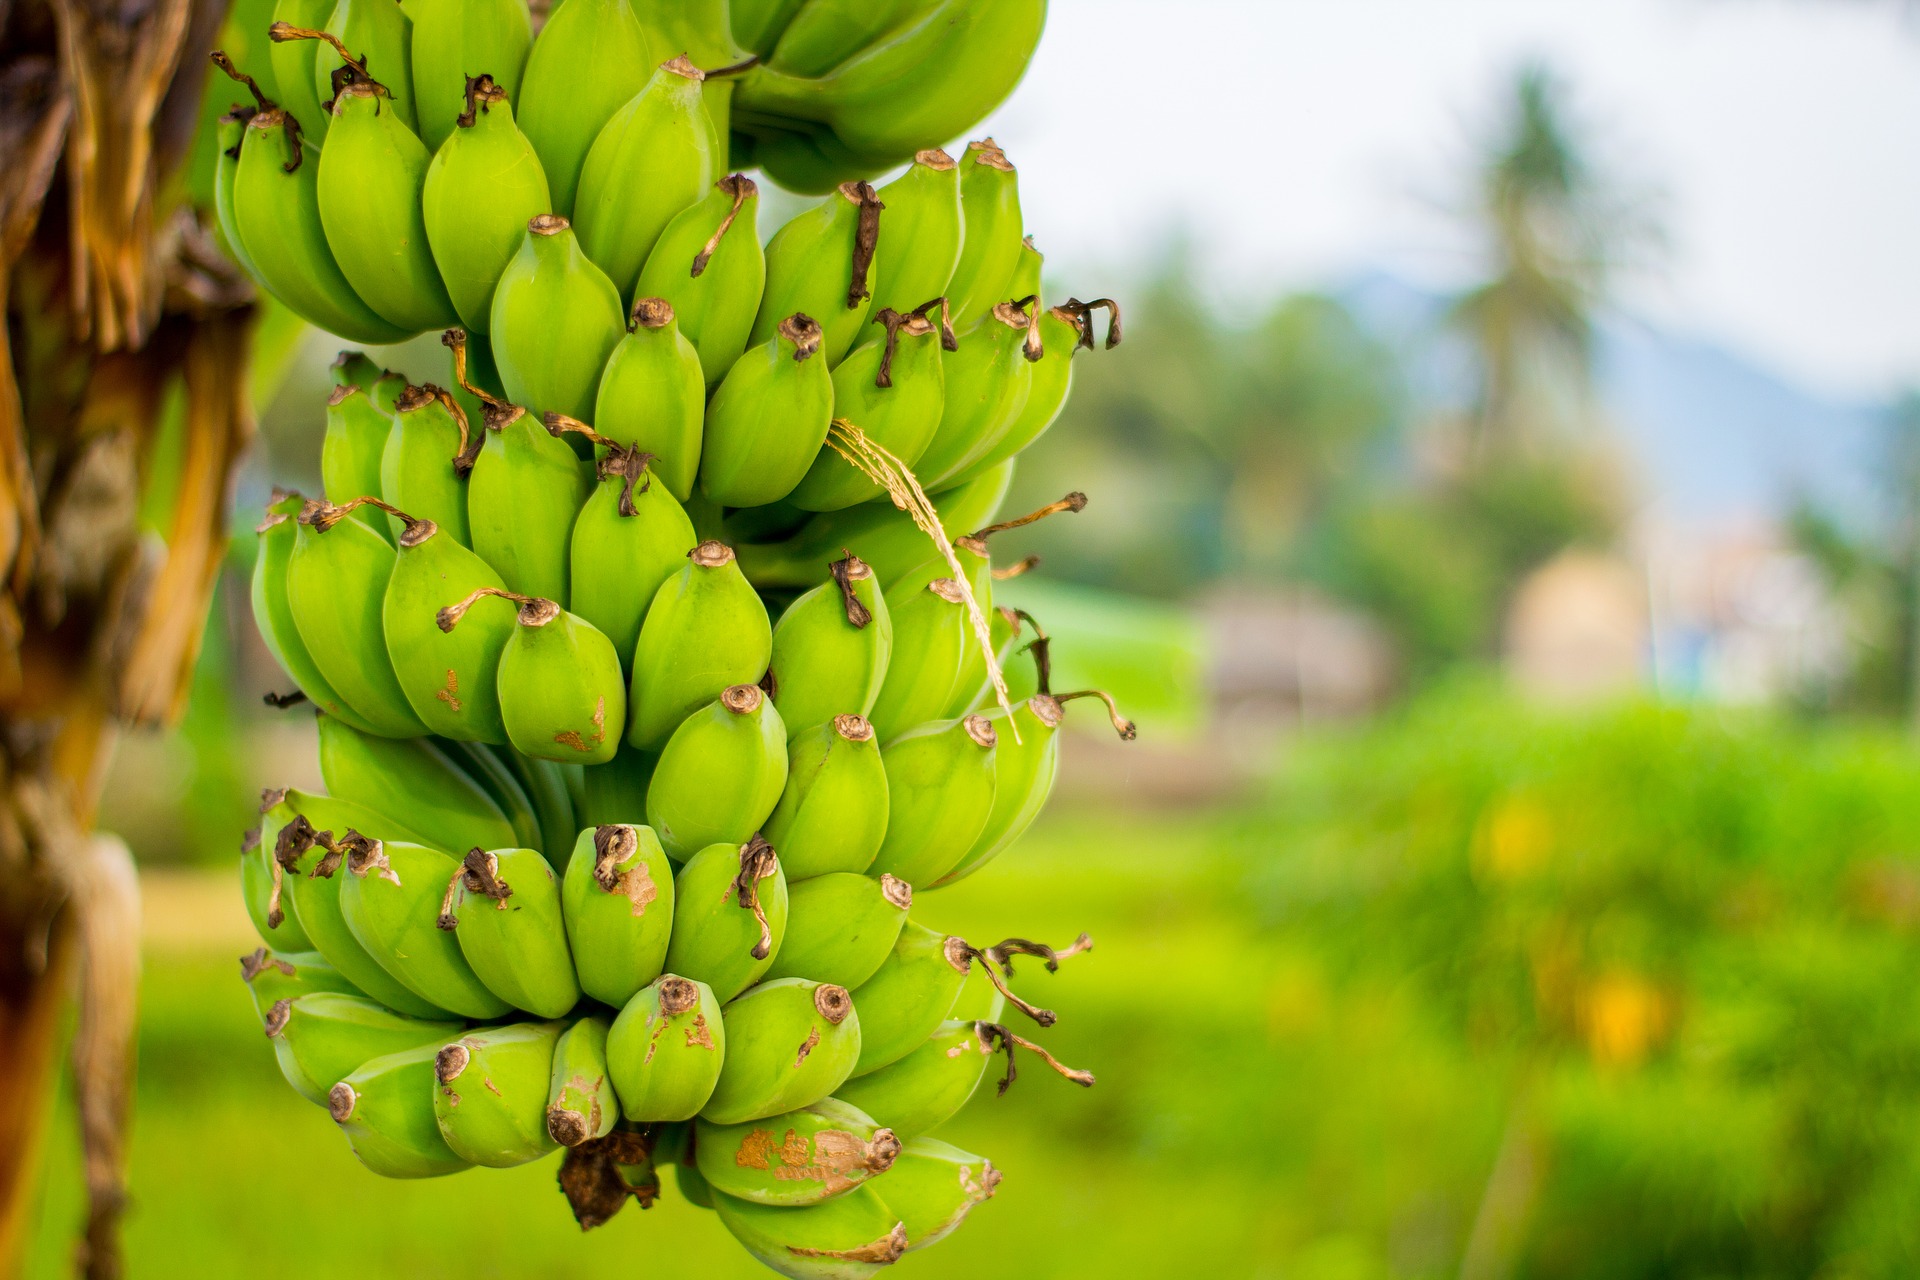 Хотя все растения являются потенциальным источником наноцеллюлозы, высокое содержание целлюлозы в банановых растениях делает их особенно подходящими, наряду с тем, что новые растения выращиваются каждый год.